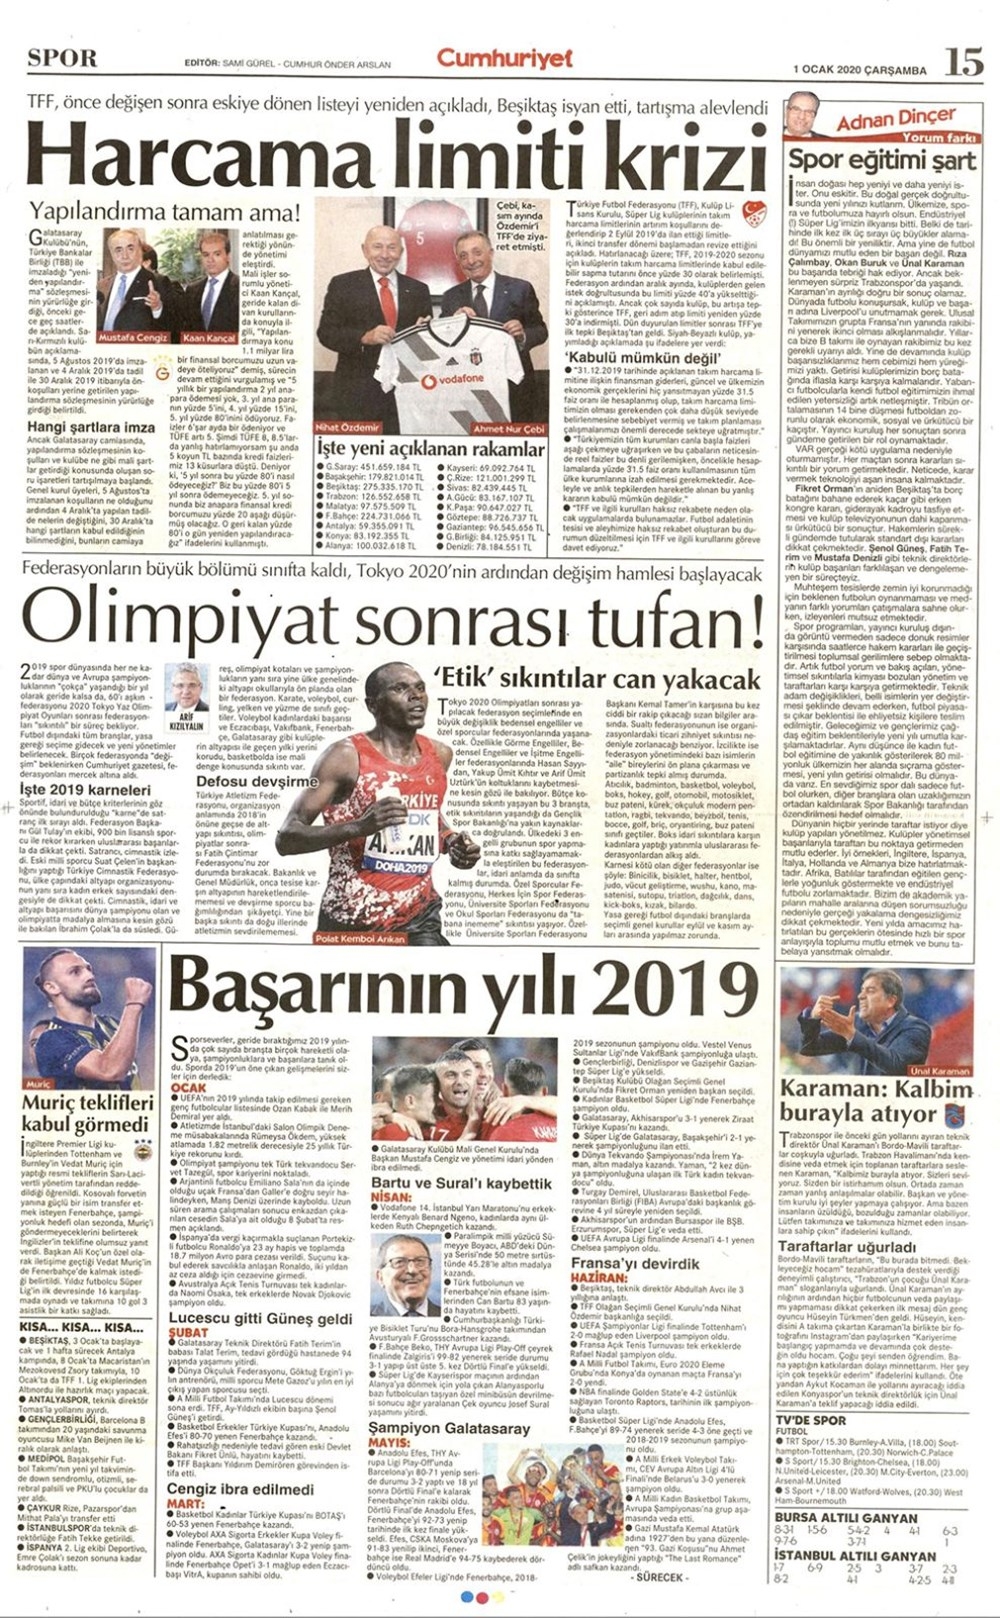 Yeni yılın ilk spor manşetleri...Günün spor manşetleri (1 Ocak 2020) 2